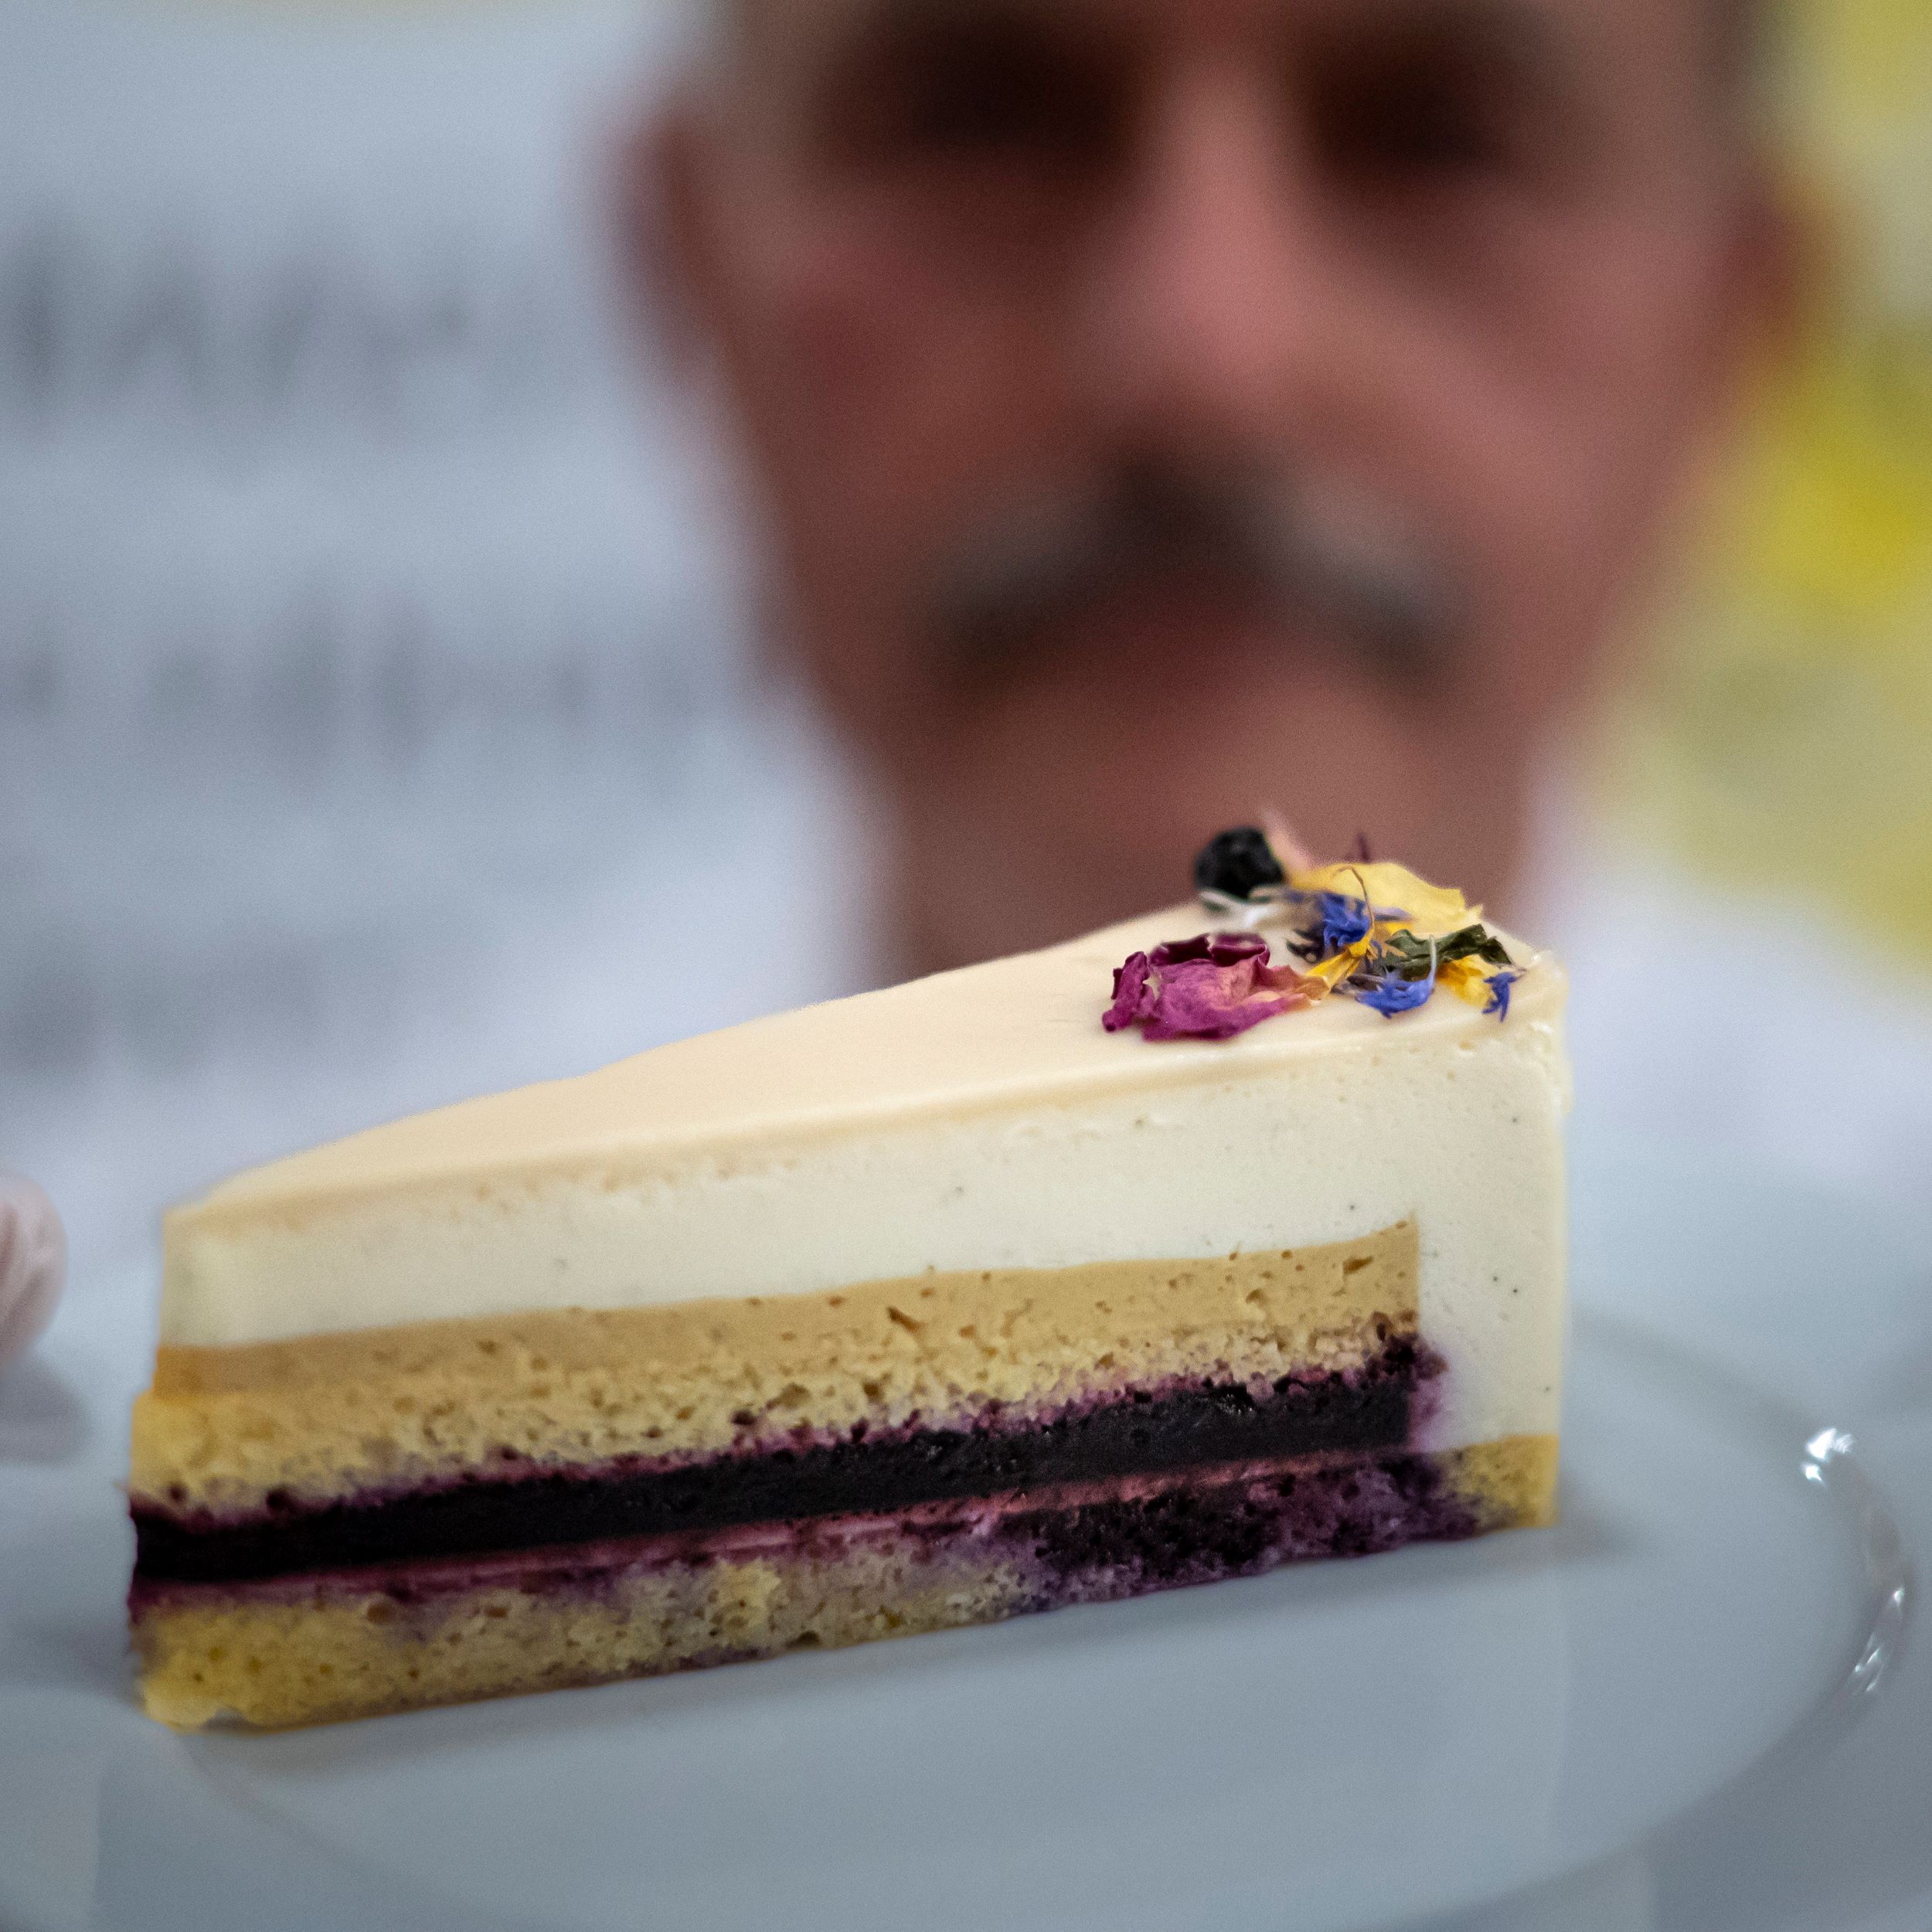 A Magyarország cukormentes tortája cím idei nyertes alkotása, a makói Papp cukrászda cukrásza, Lawal-Papp Zsófia Kikelet elnevezésű fekete teás-levendulás kreációja.